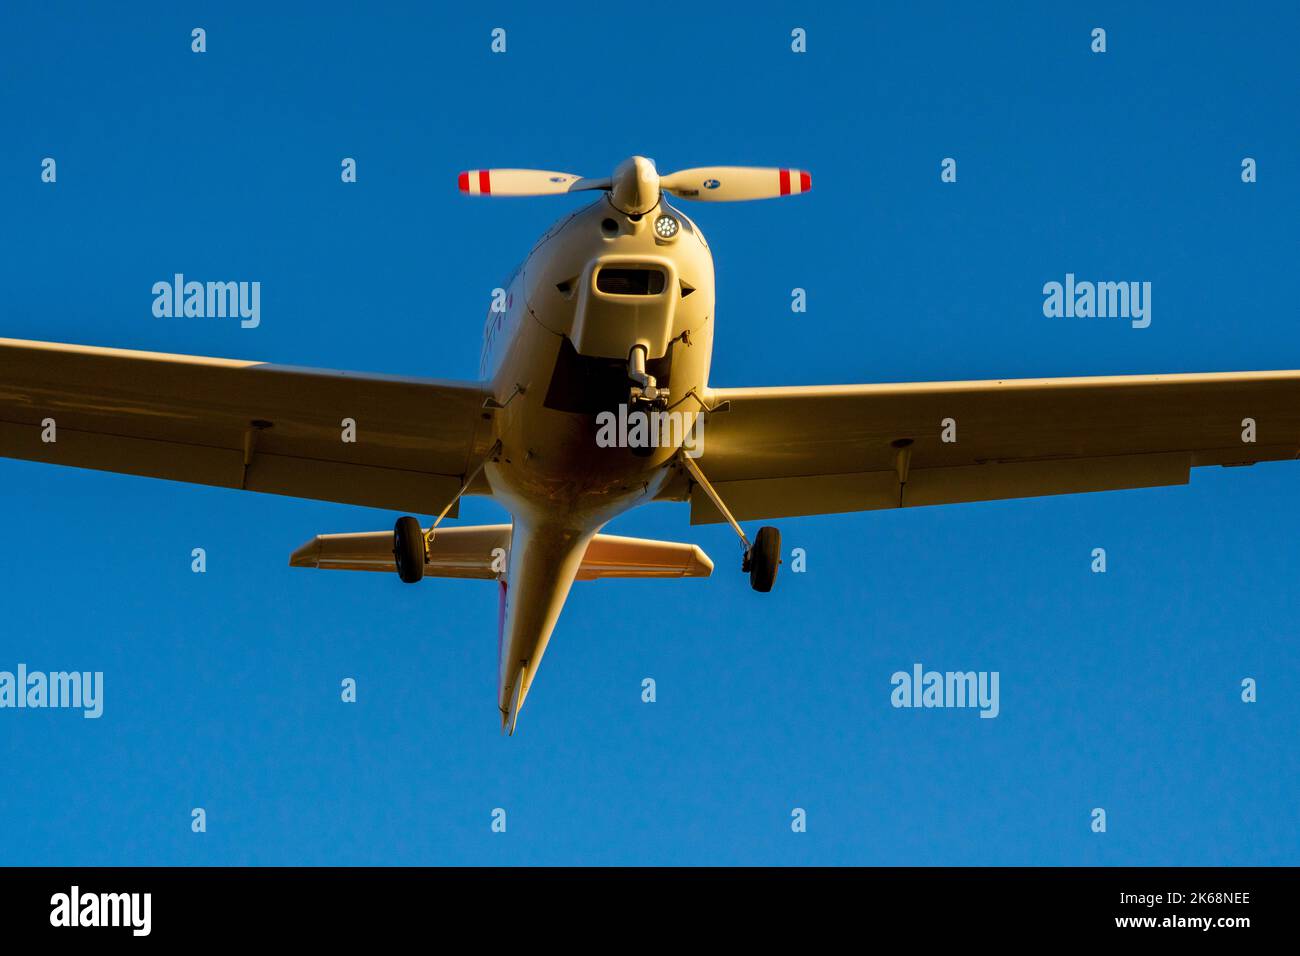 Avion à hélice unique en train d'atterrir d'une vue de nez en bas centrée sur l'image. Banque D'Images